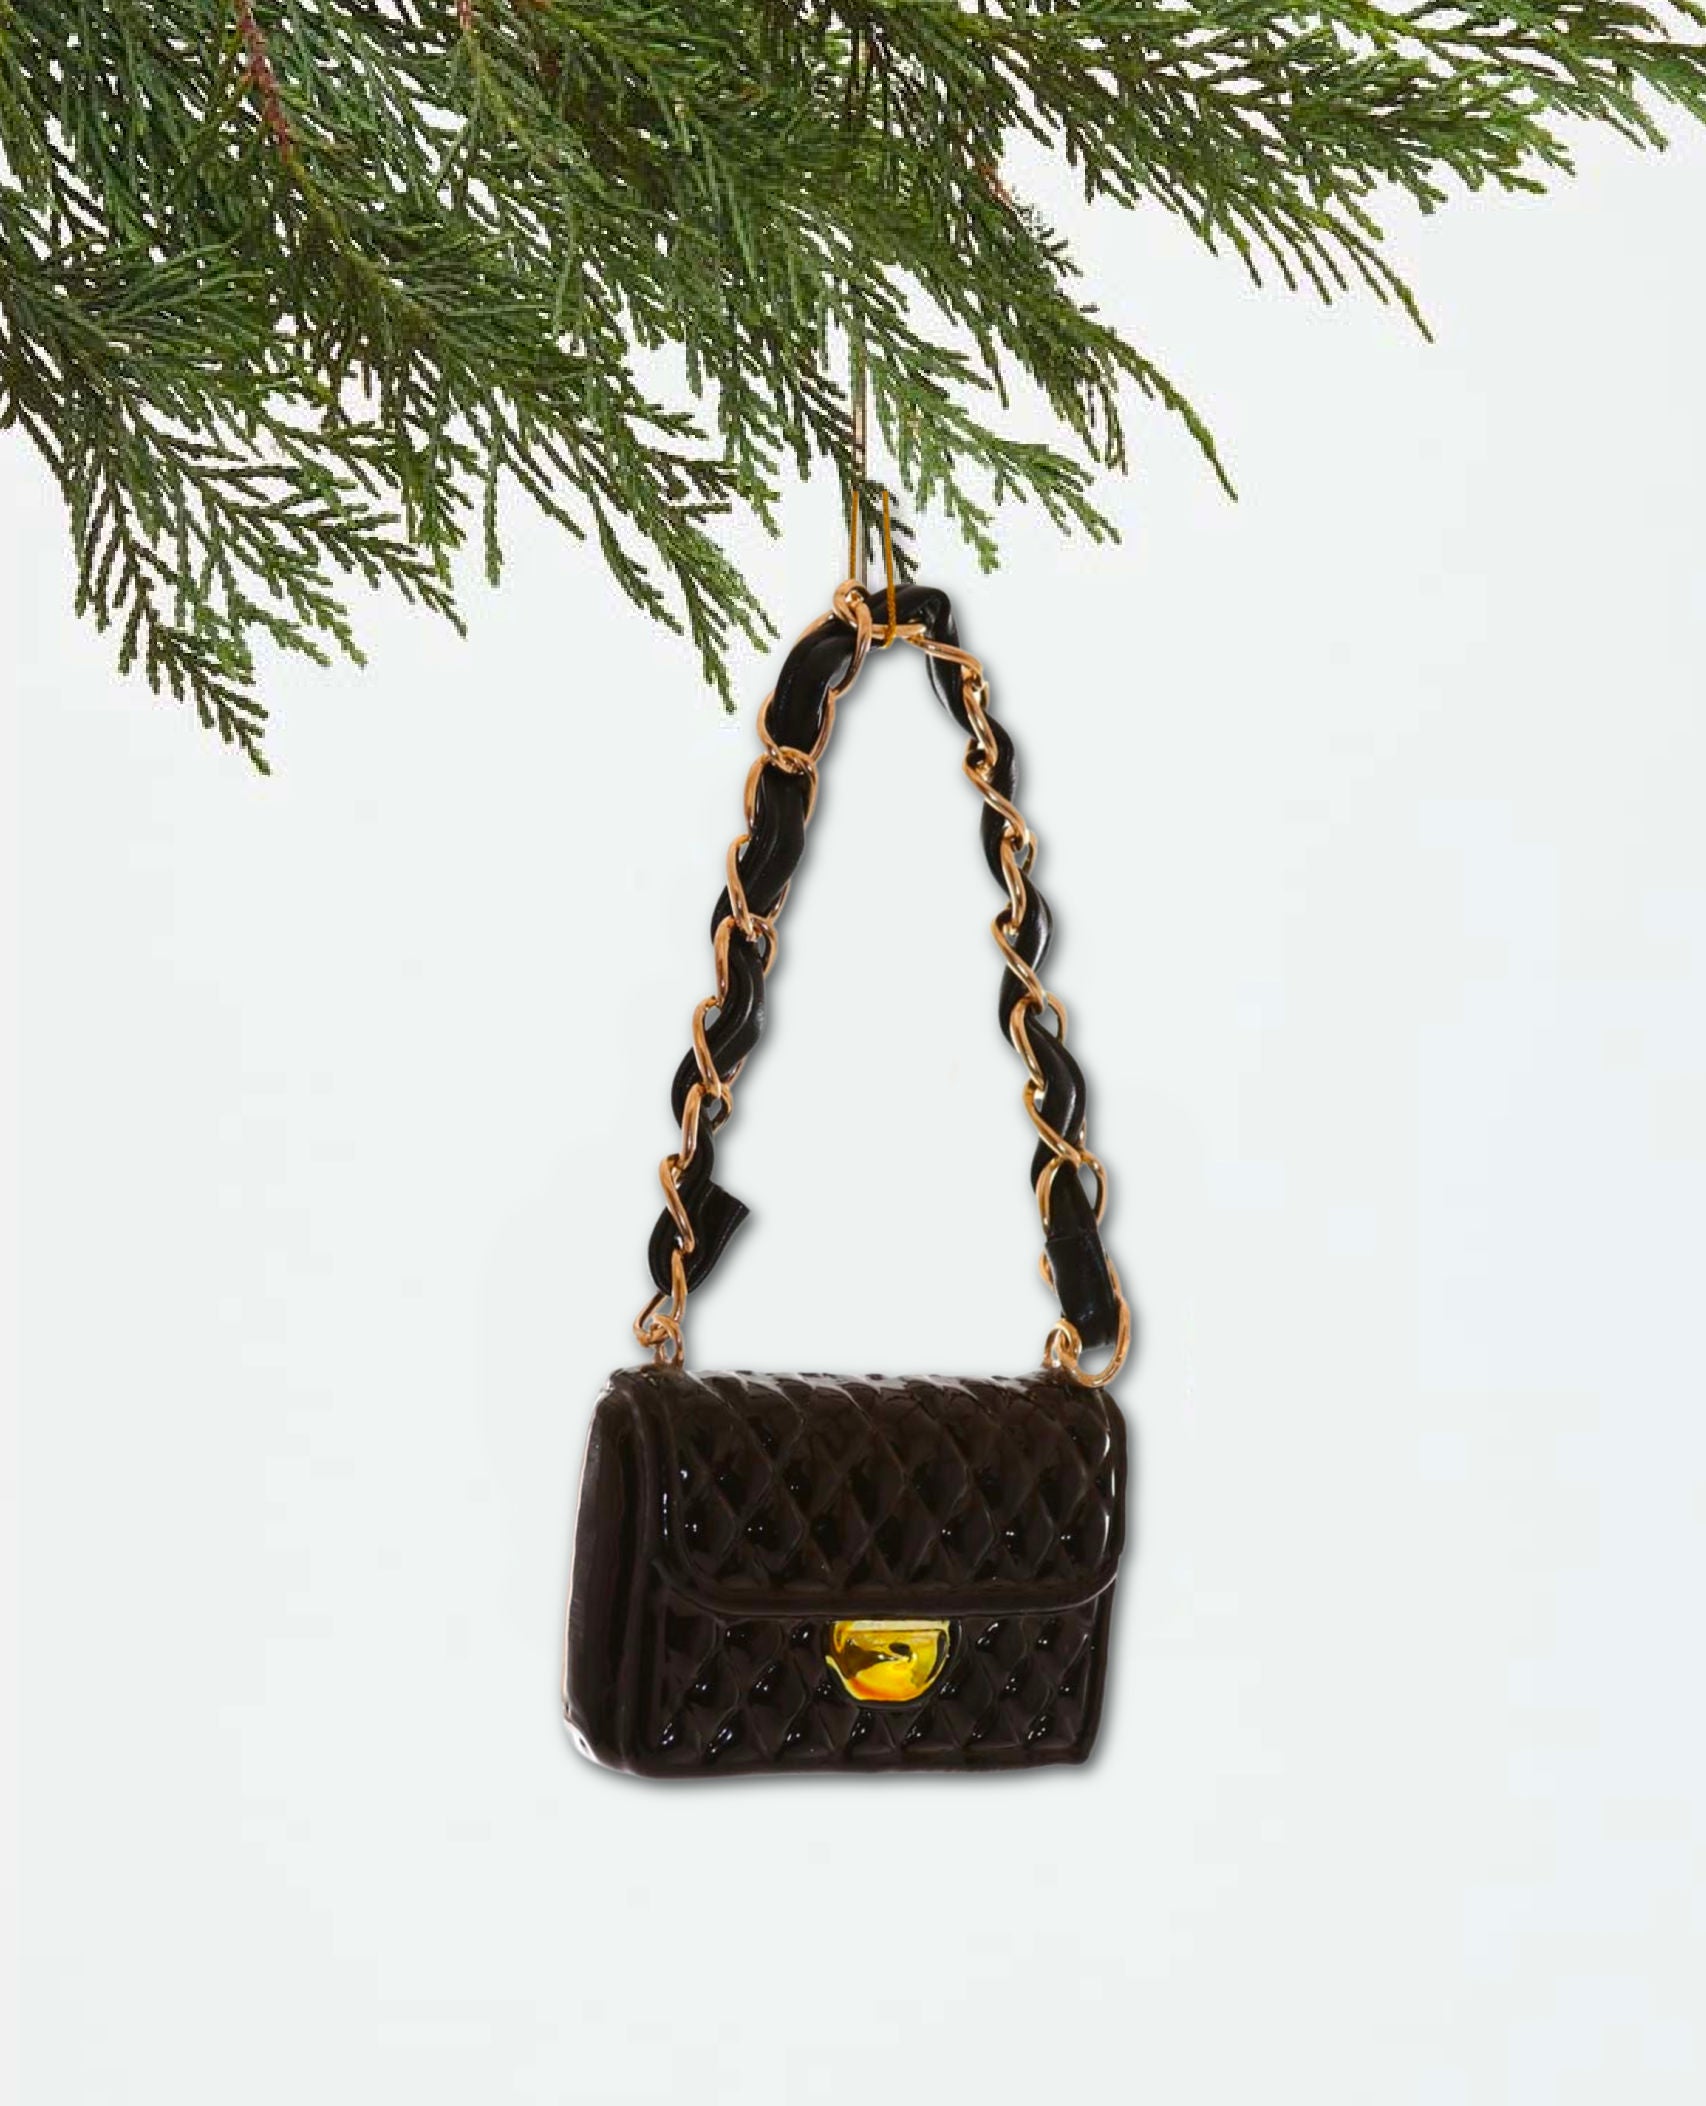 Black and Gold Handbag Ornament